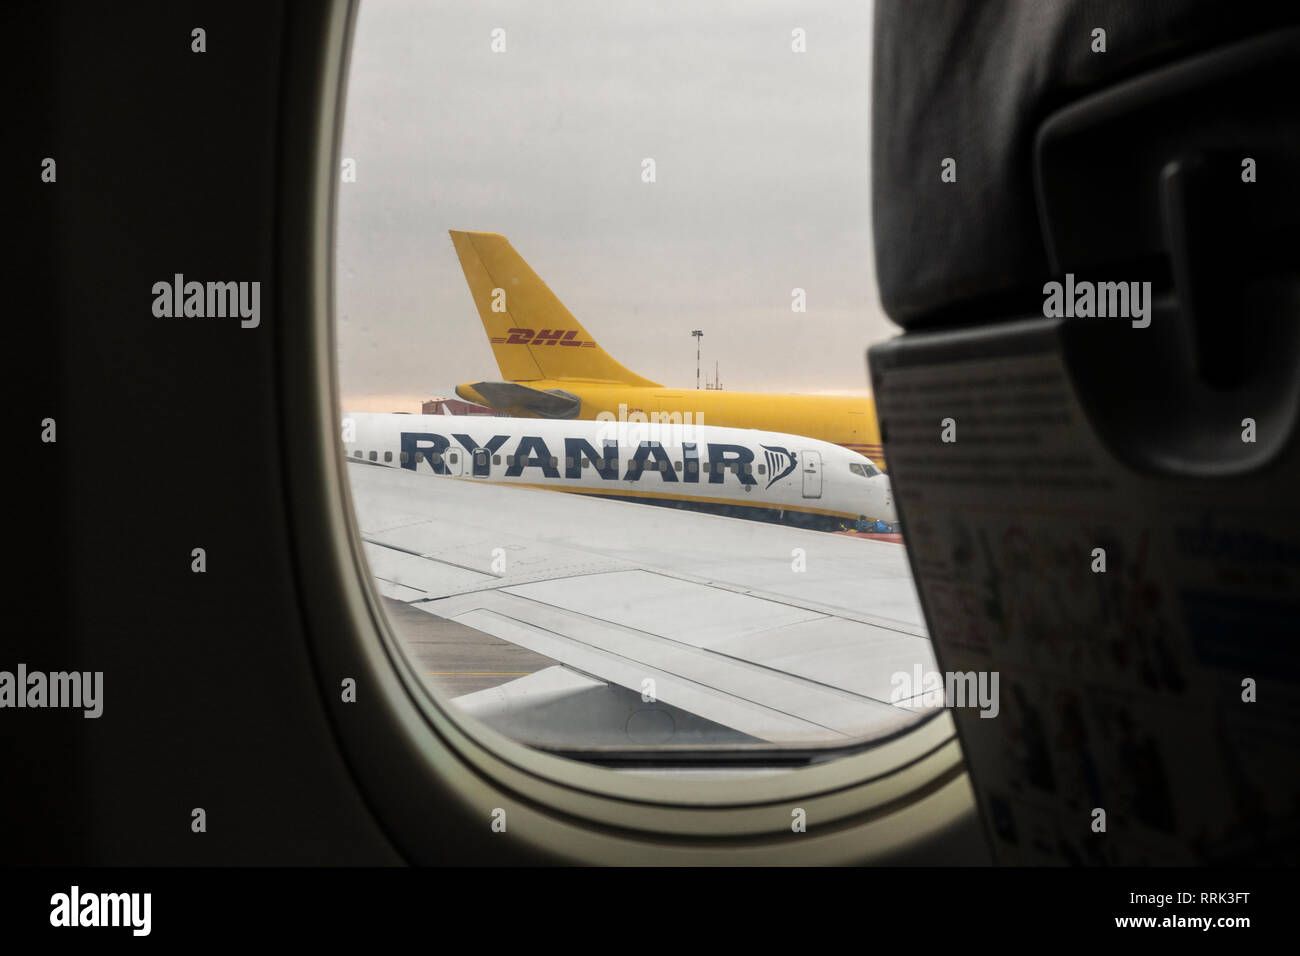 Ryanair in Bergamo airport Stock Photo